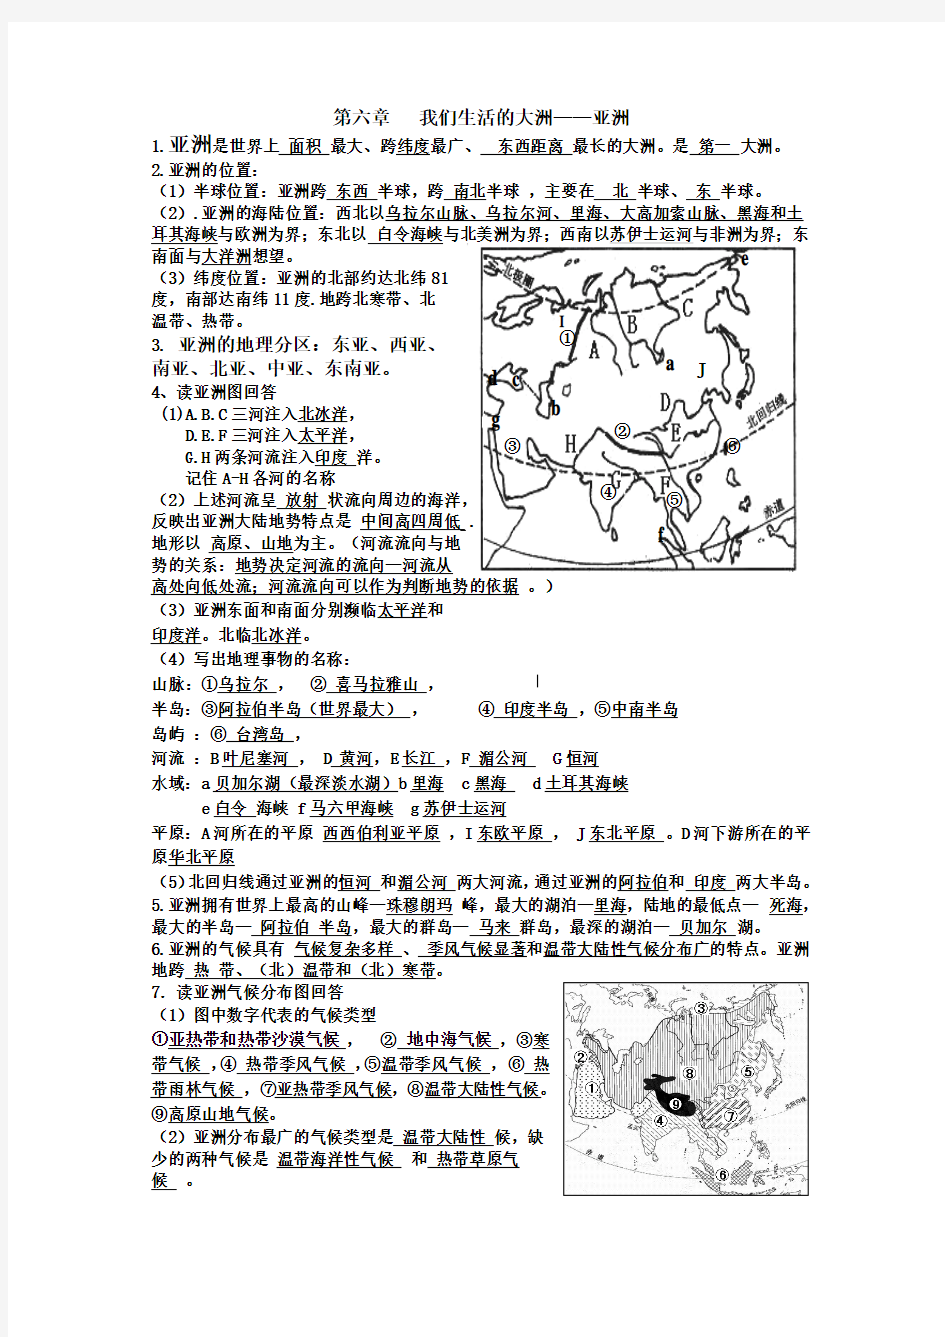 人教版地理七年级下册总复习资料(打印版)2015.03